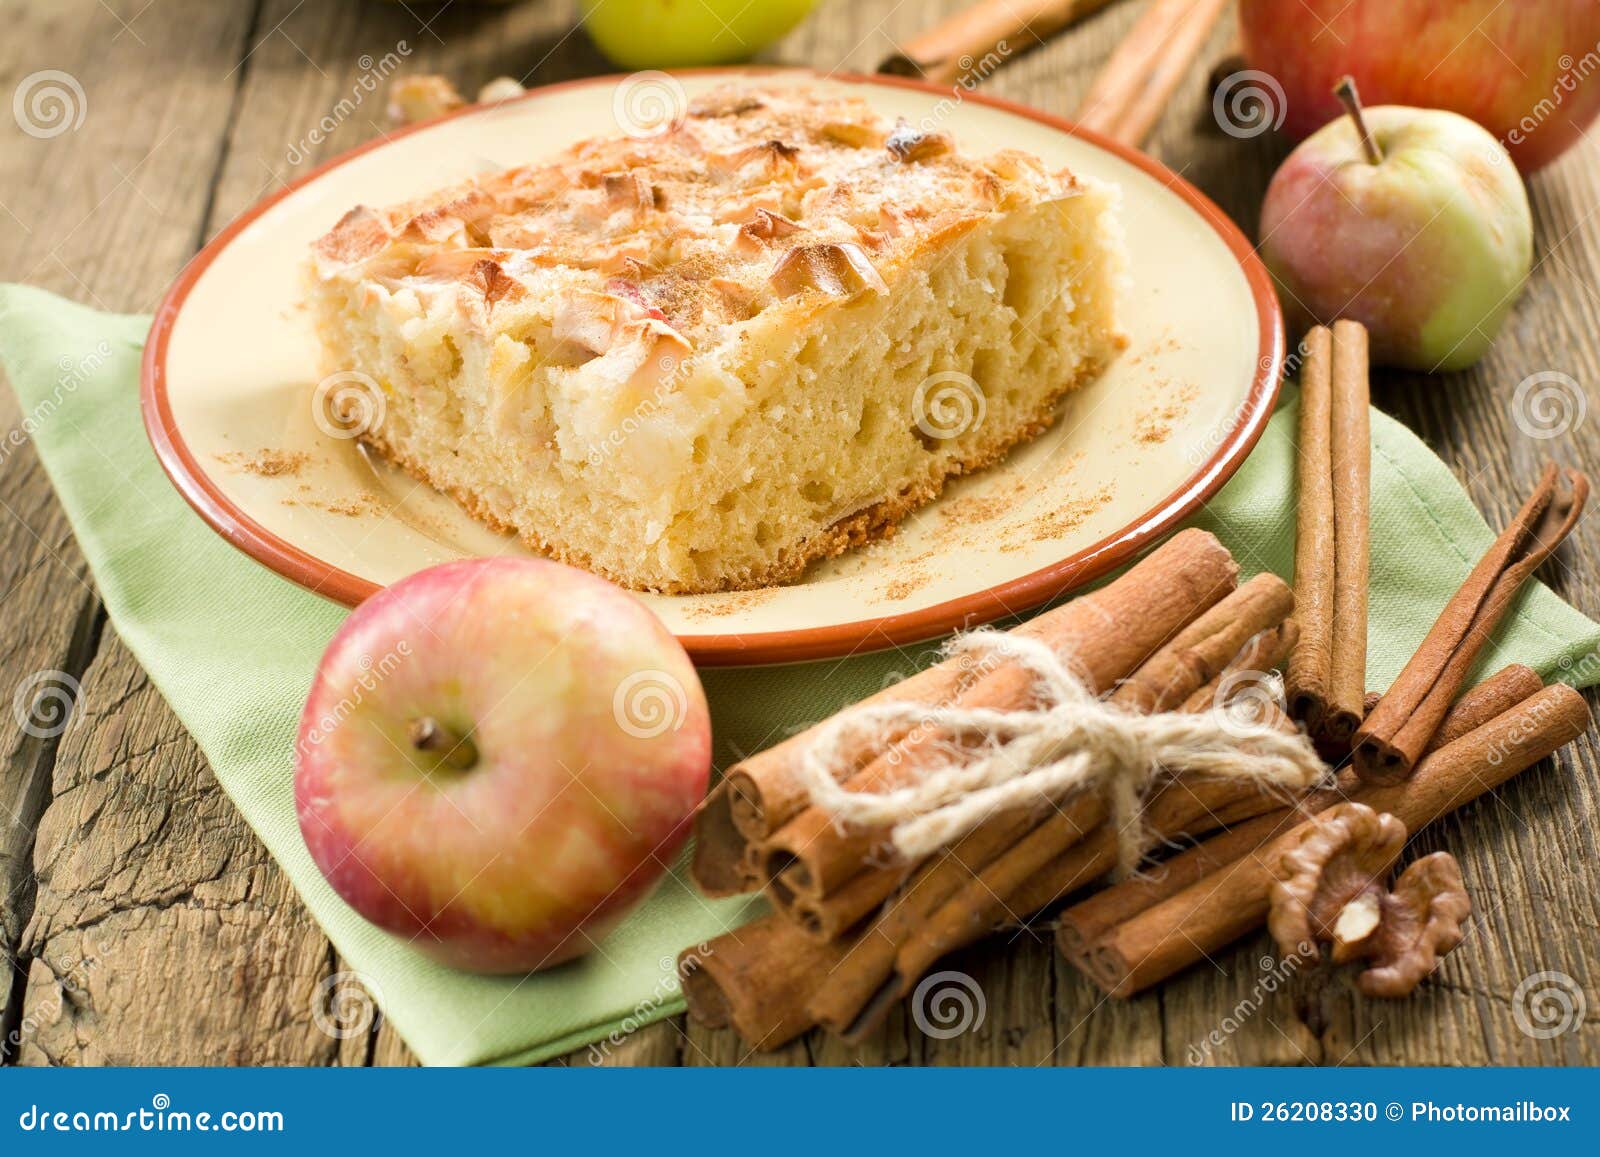 Секреты пышной шарлотки с яблоками: Секреты Приготовления Пышной Шарлотки с Фото для Новичков